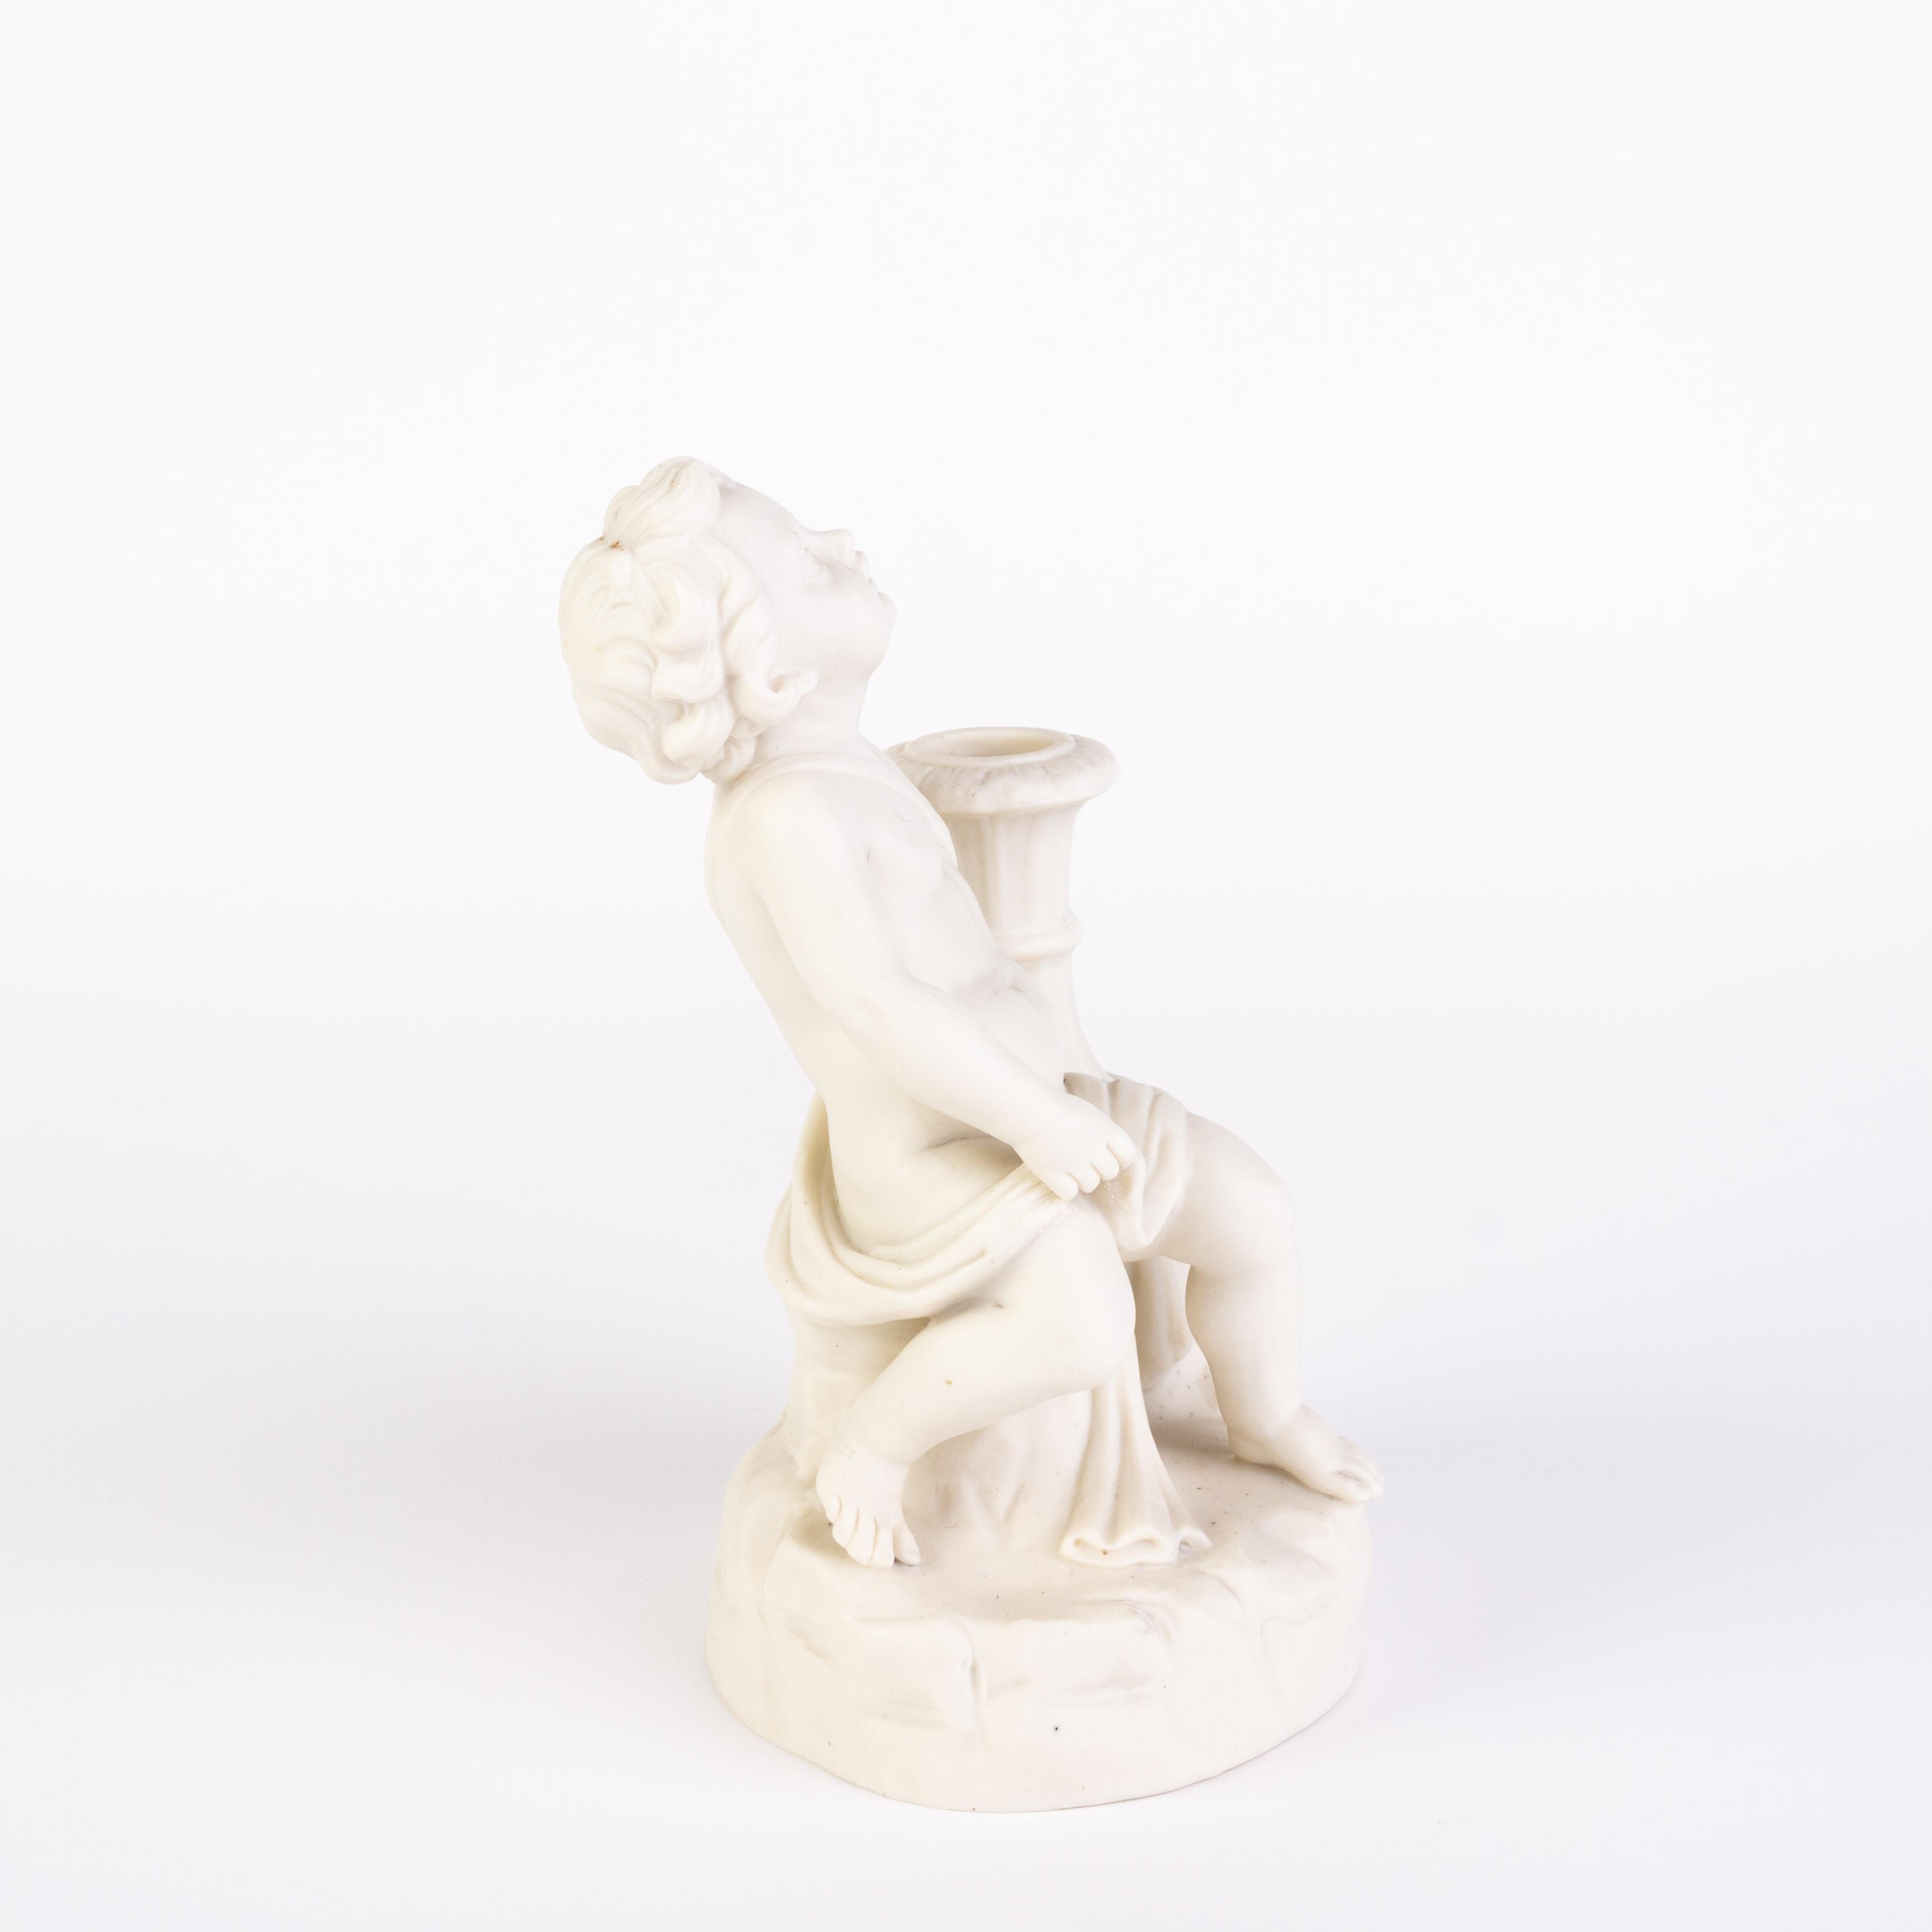 Statue victorienne de Copeland Parian Ware d'un bougeoir Putto du 19ème siècle
Bon état
Provenant d'une collection privée.
Expédition internationale gratuite.